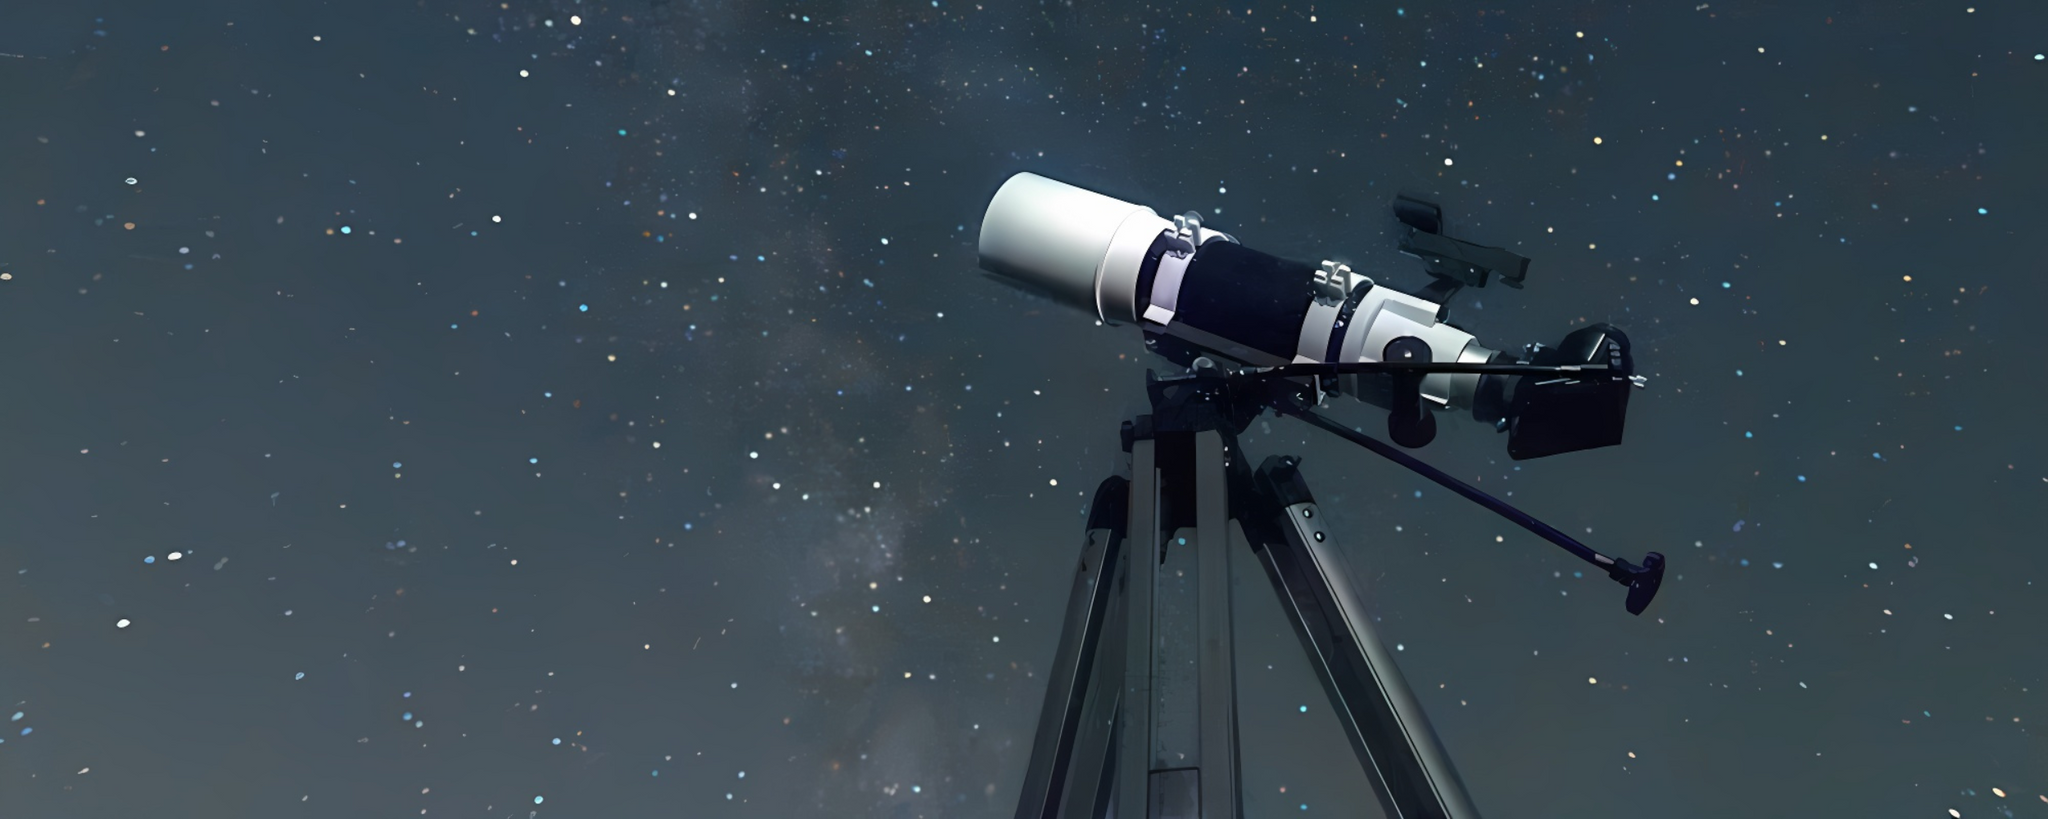 El cosmos desde un telescopio profesional